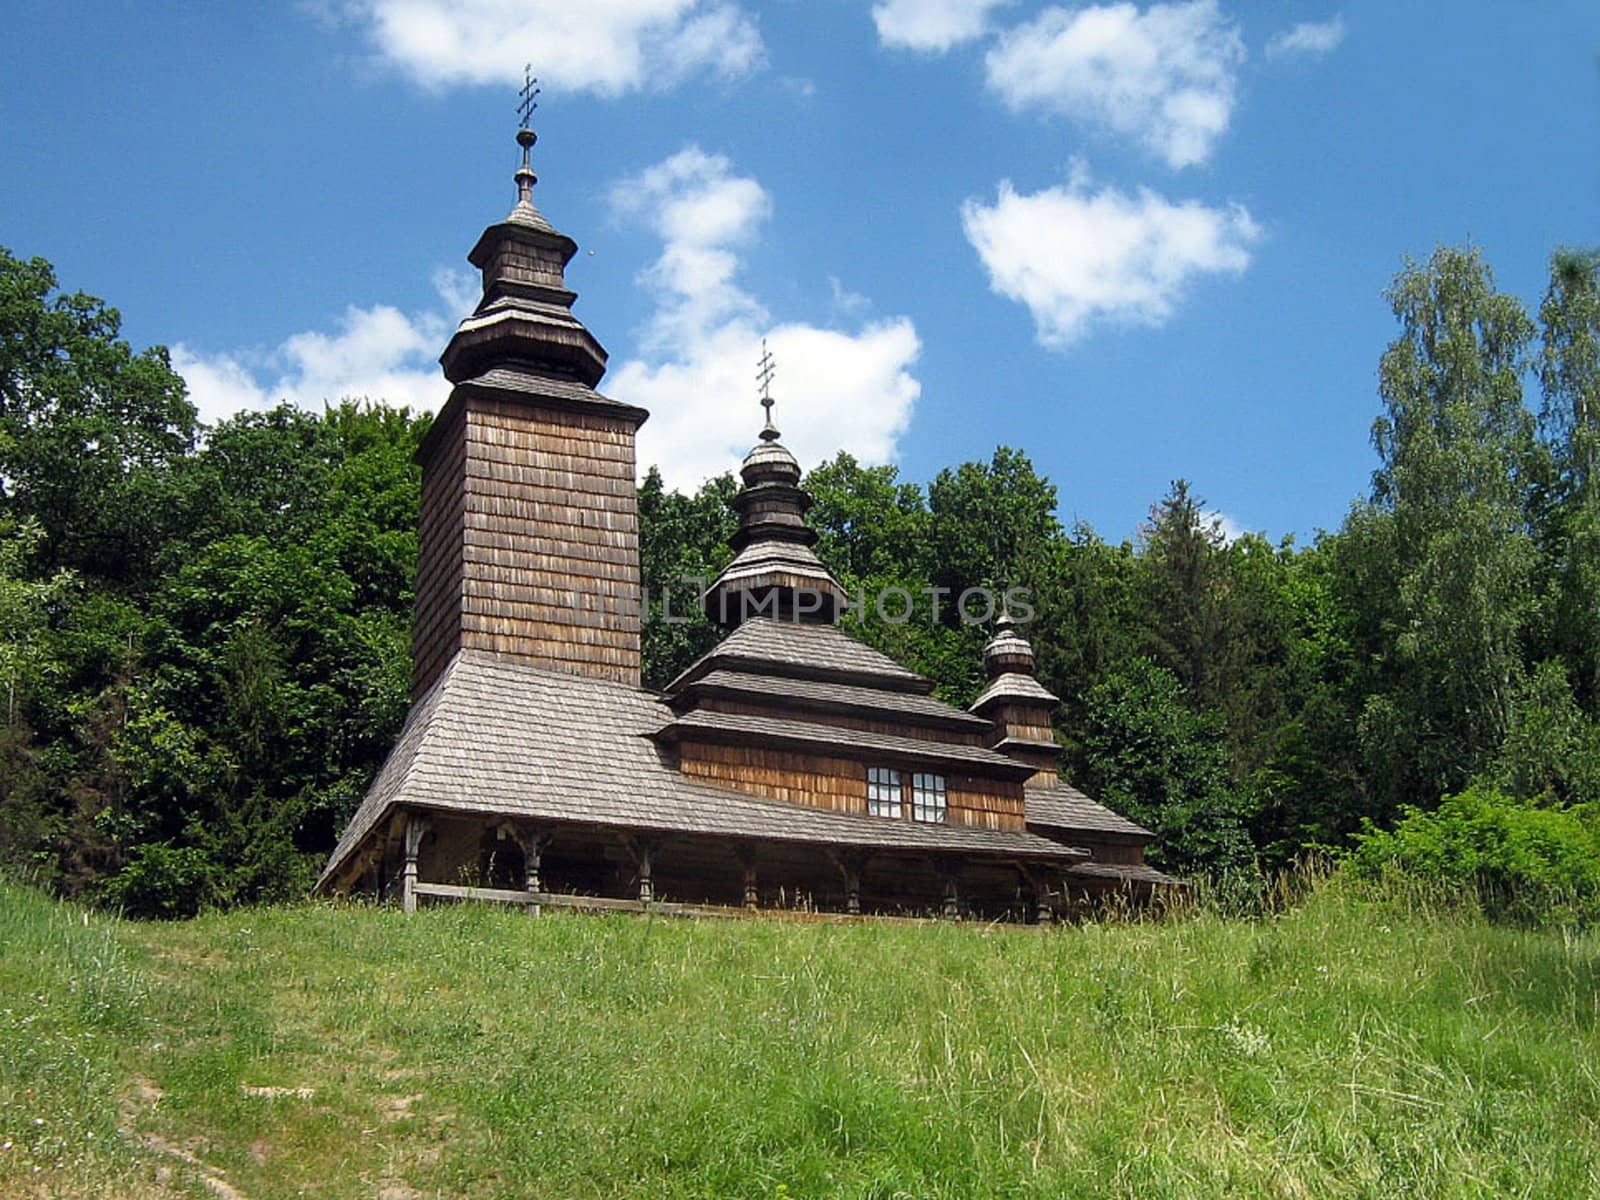 Rural church by georg777